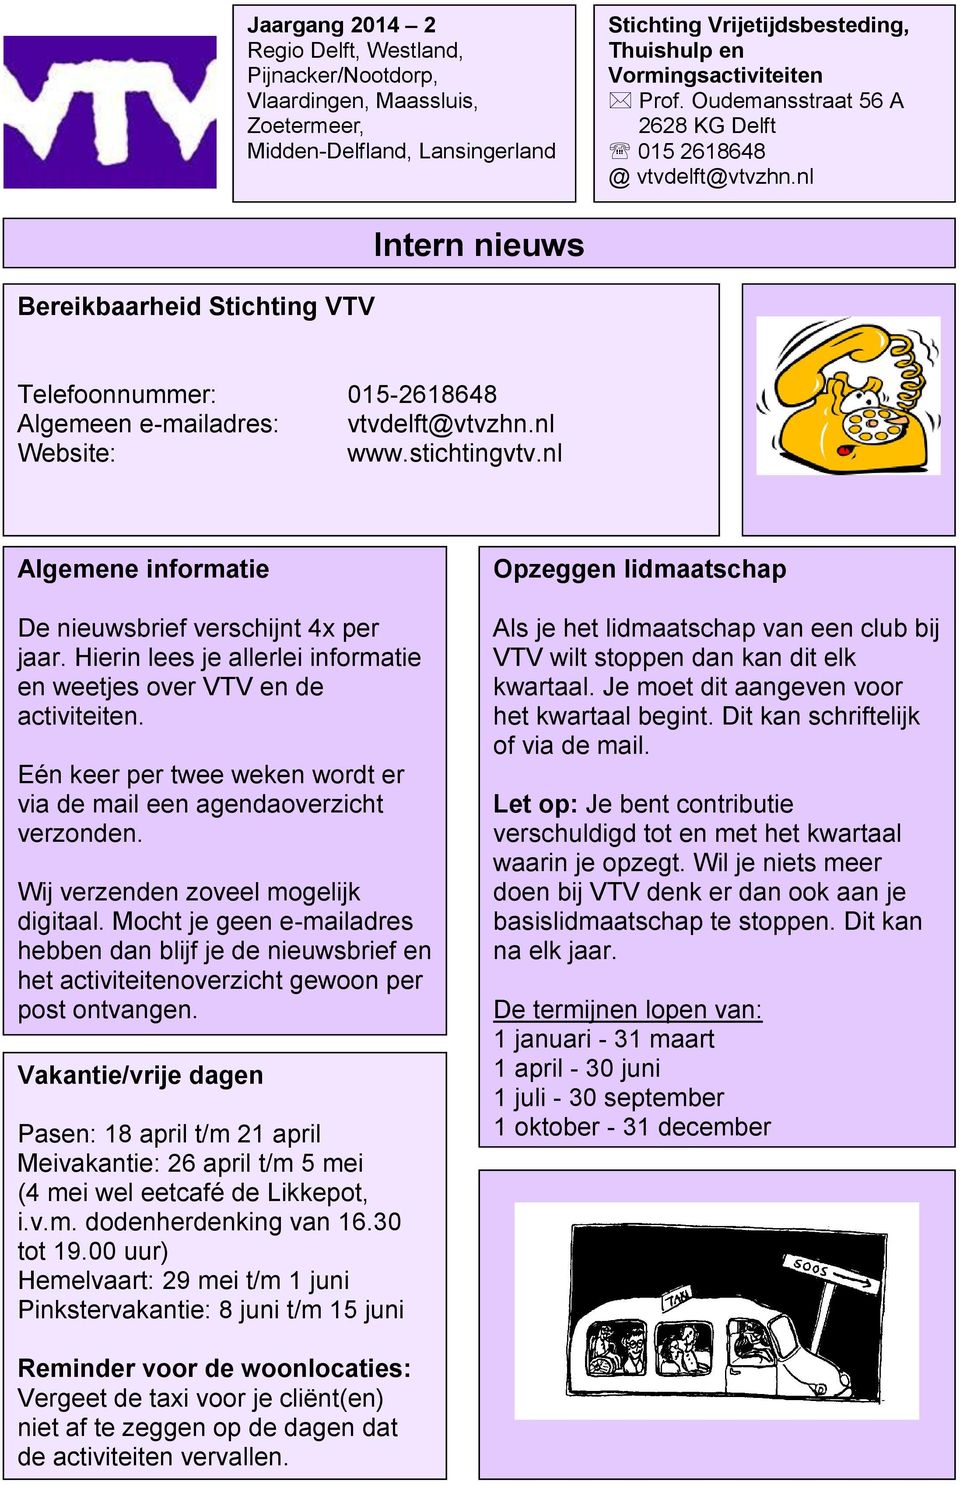 nl Website: www.stichtingvtv.nl Algemene informatie De nieuwsbrief verschijnt 4x per jaar. Hierin lees je allerlei informatie en weetjes over VTV en de activiteiten.